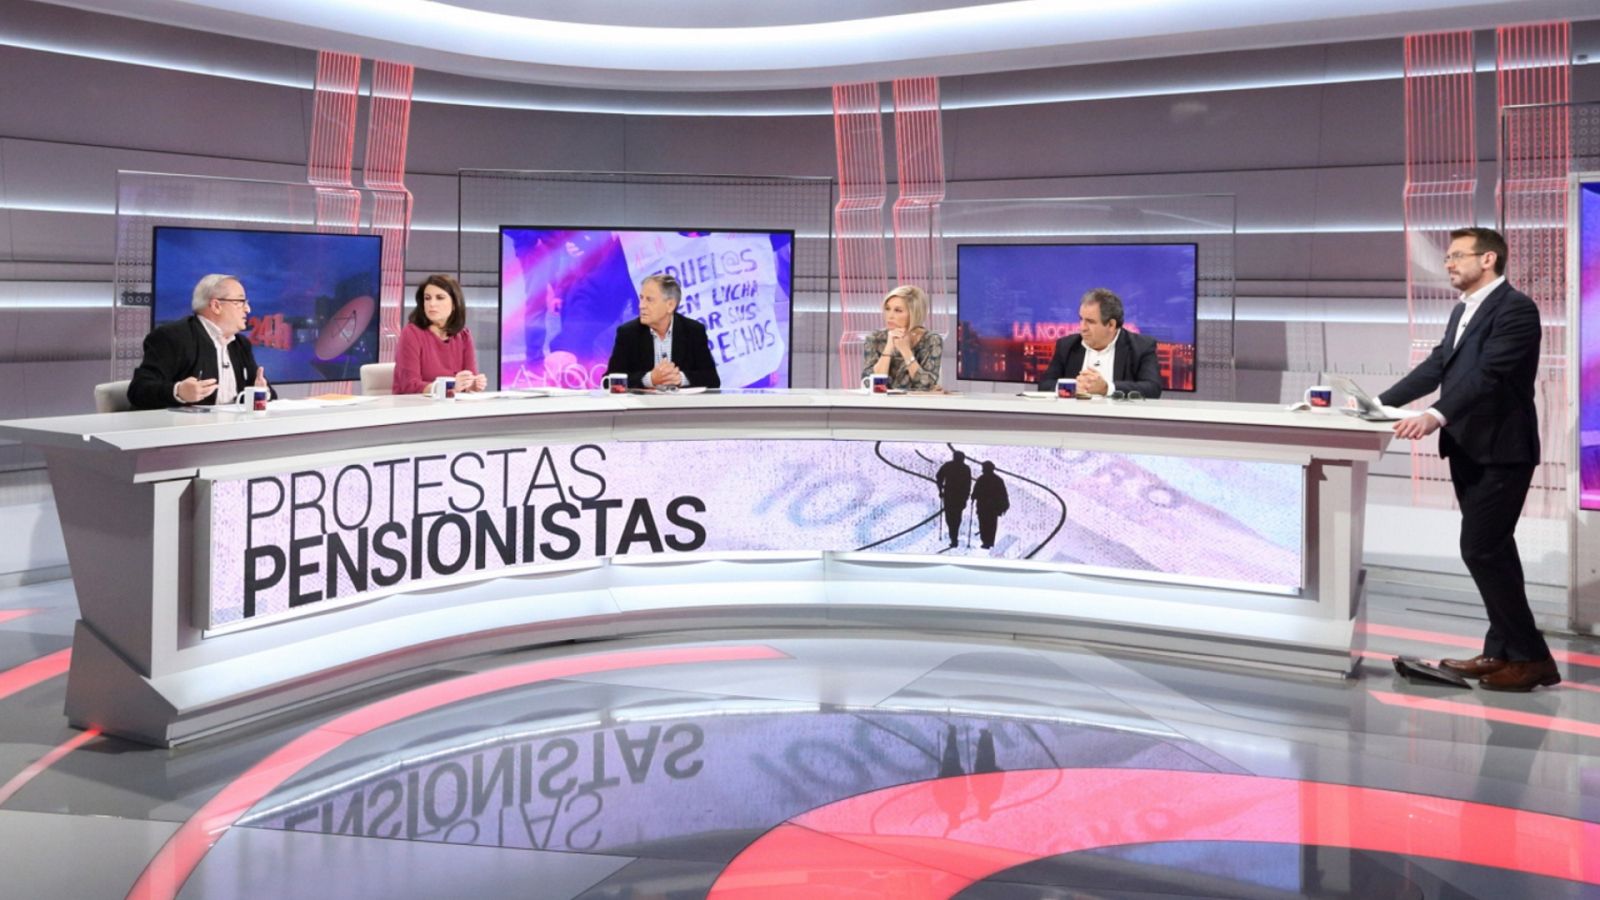 La noche en 24 horas - 09/12/19 - RTVE.es